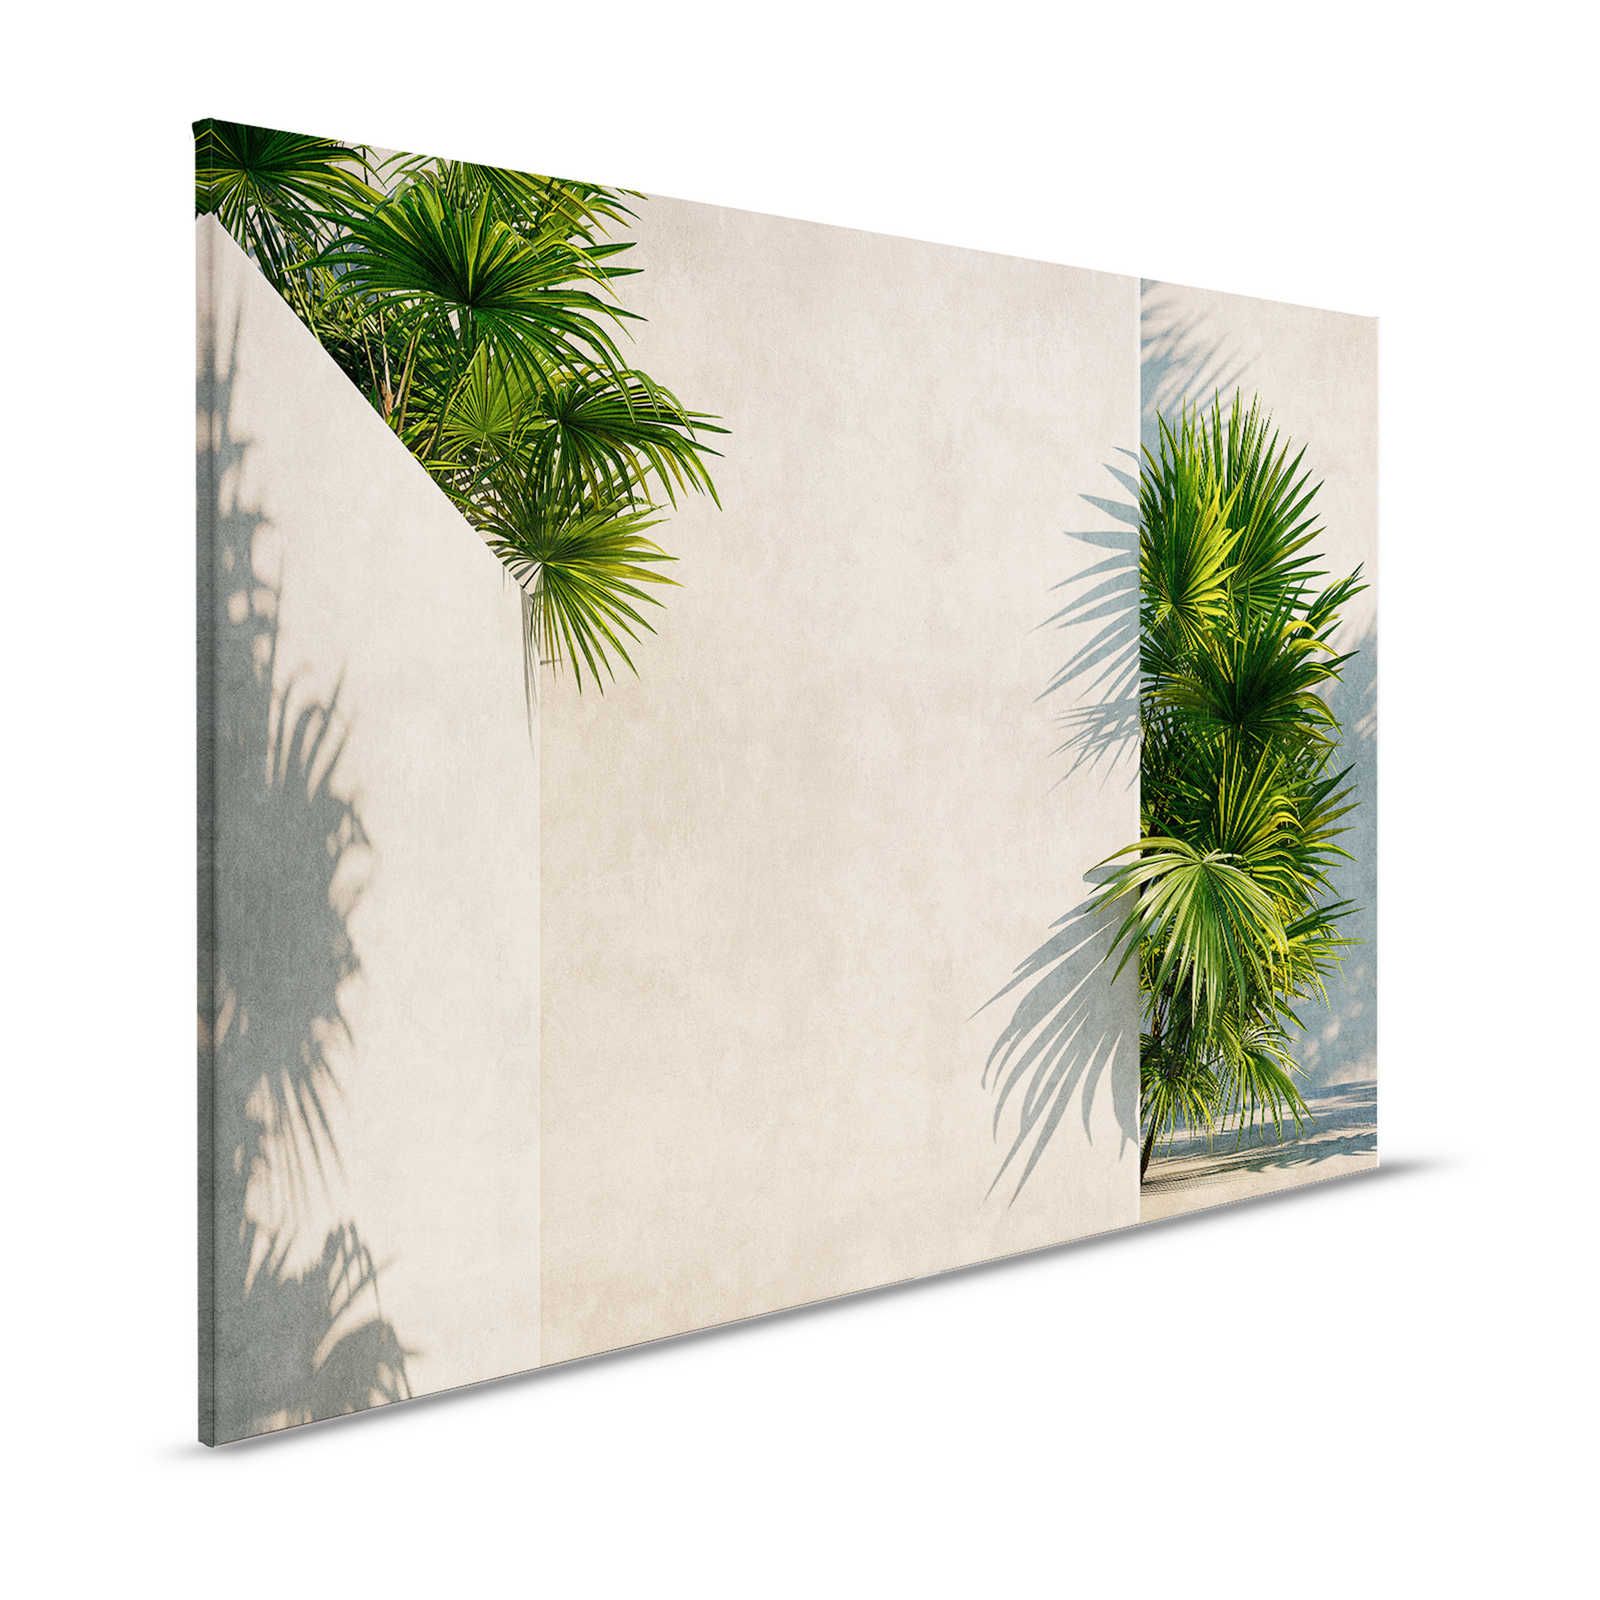 Tunisi 1 - Quadro su tela Palme in cortile con pareti in gesso - 1,20 m x 0,80 m
